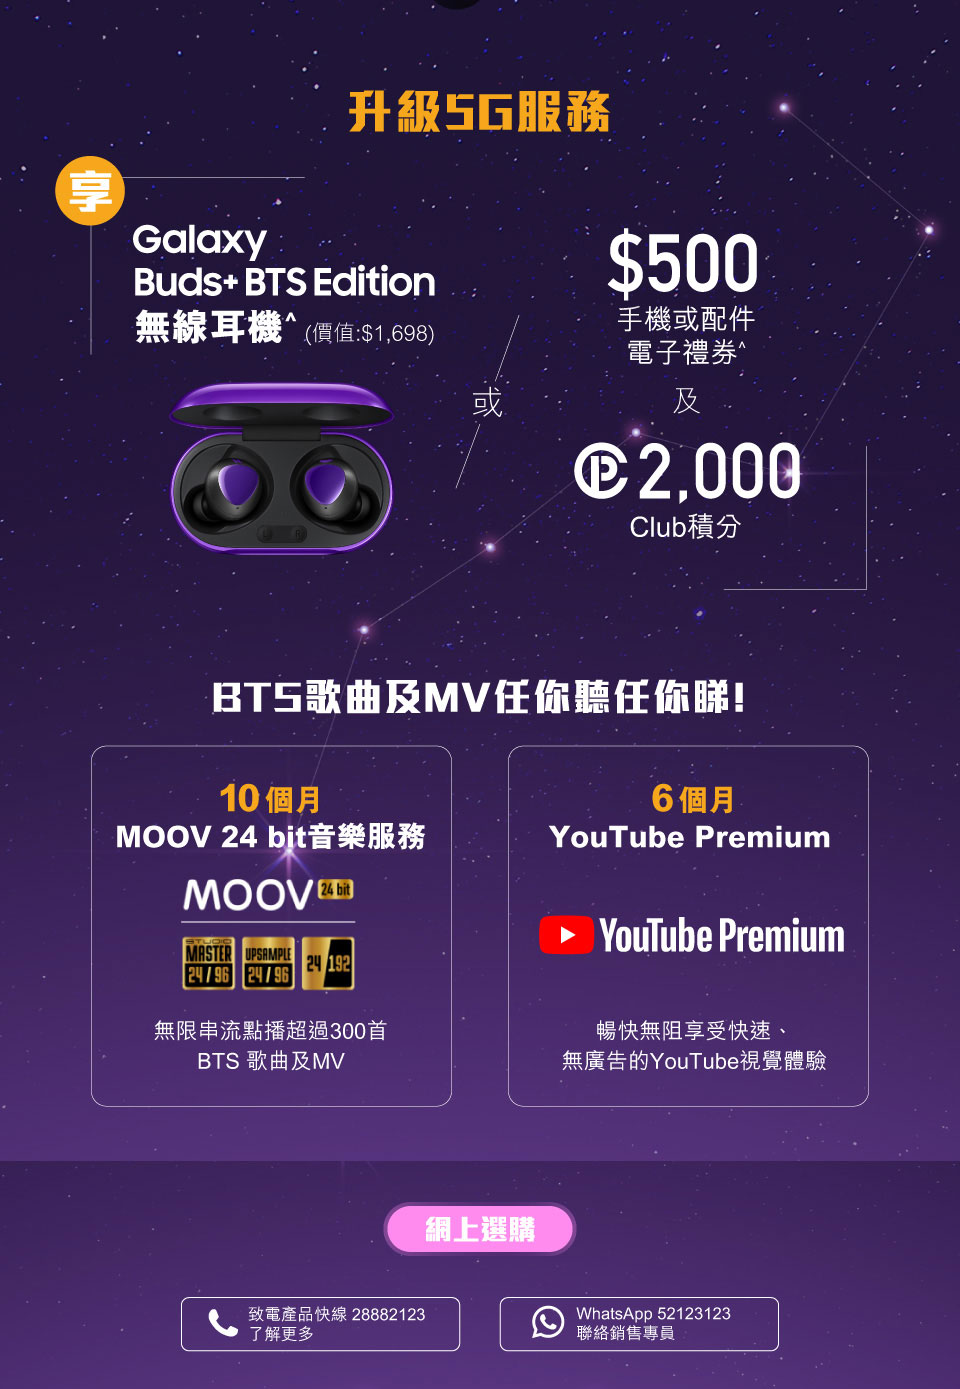 Samsung Galaxy S20+ 5G BTS Edition